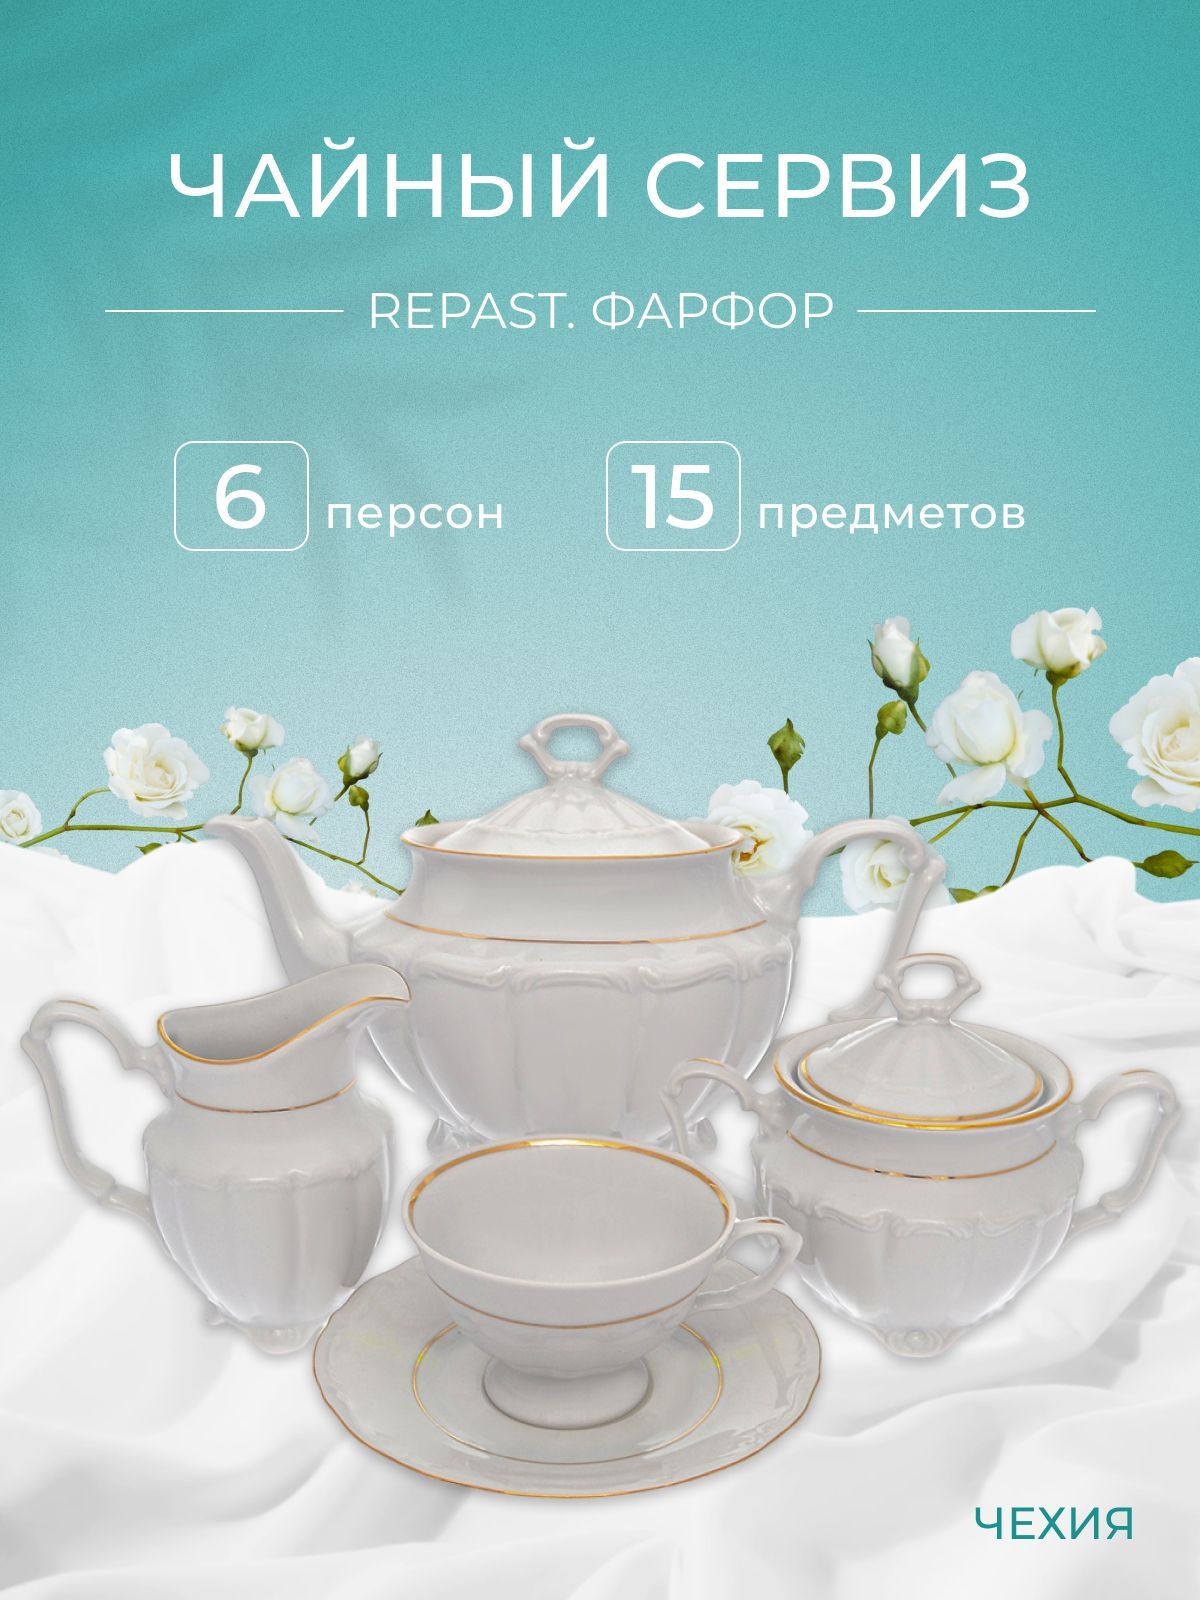 Чайный набор Классика Repast классическая чашка (15 предметов на 6 персон)